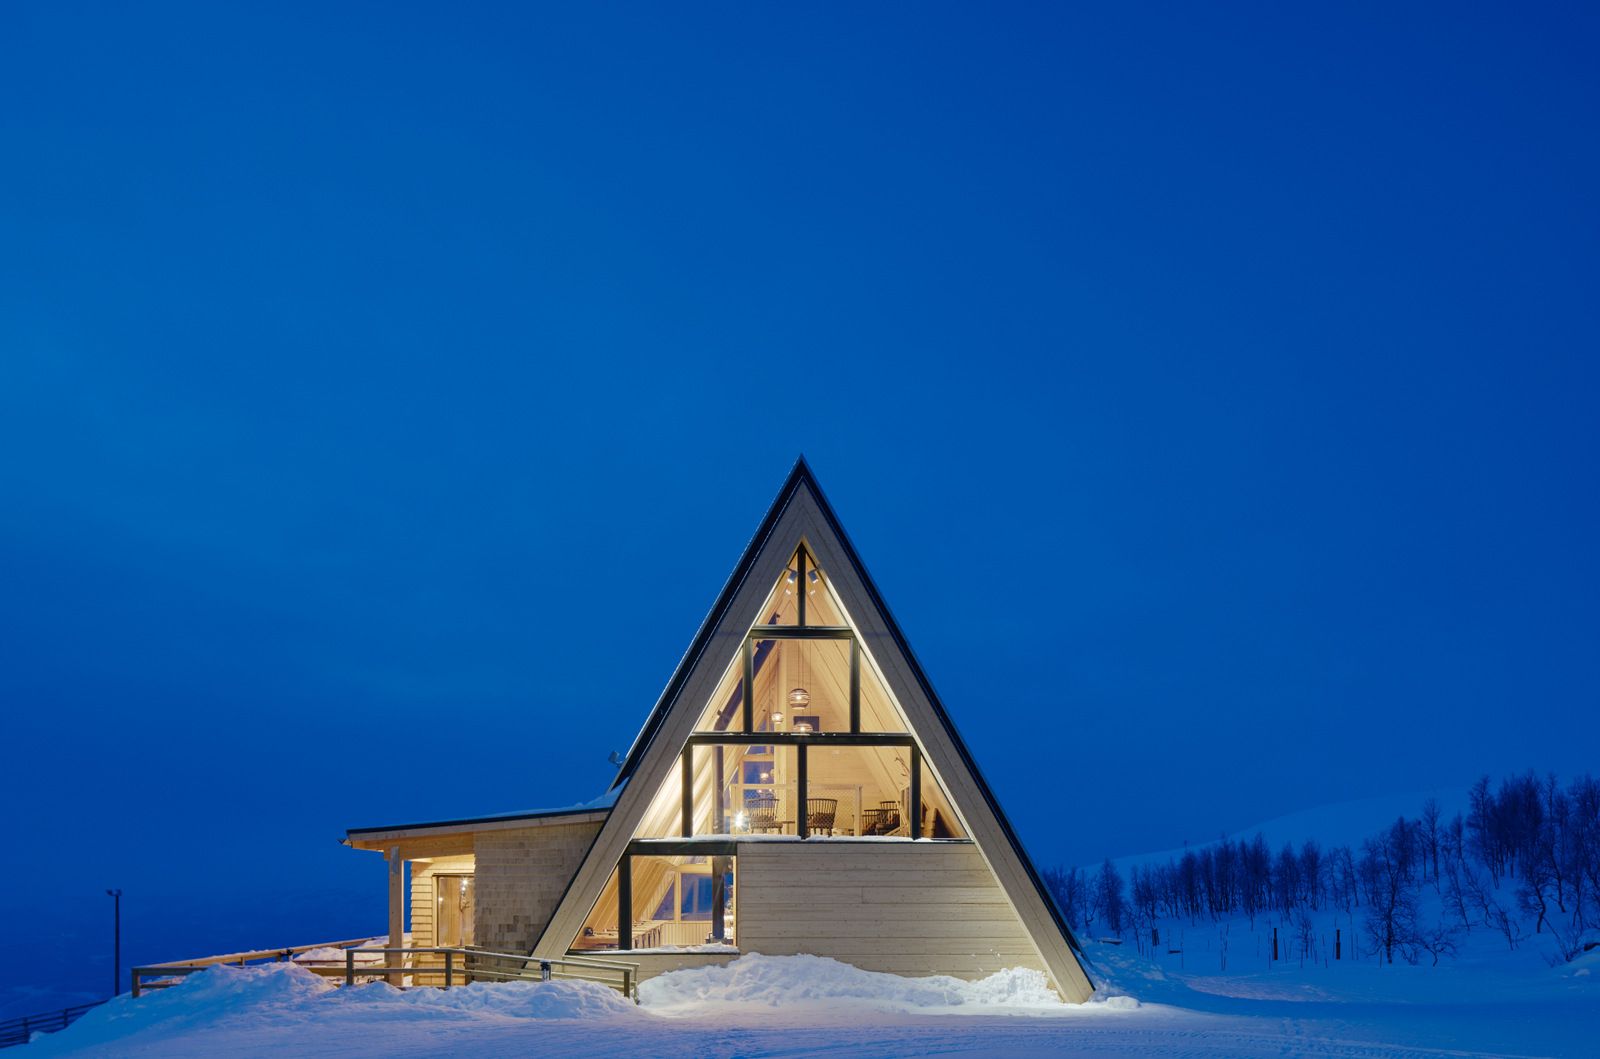 雪山上的桦木小屋银白秘林深处的魅力建筑以三角结构温暖迎客